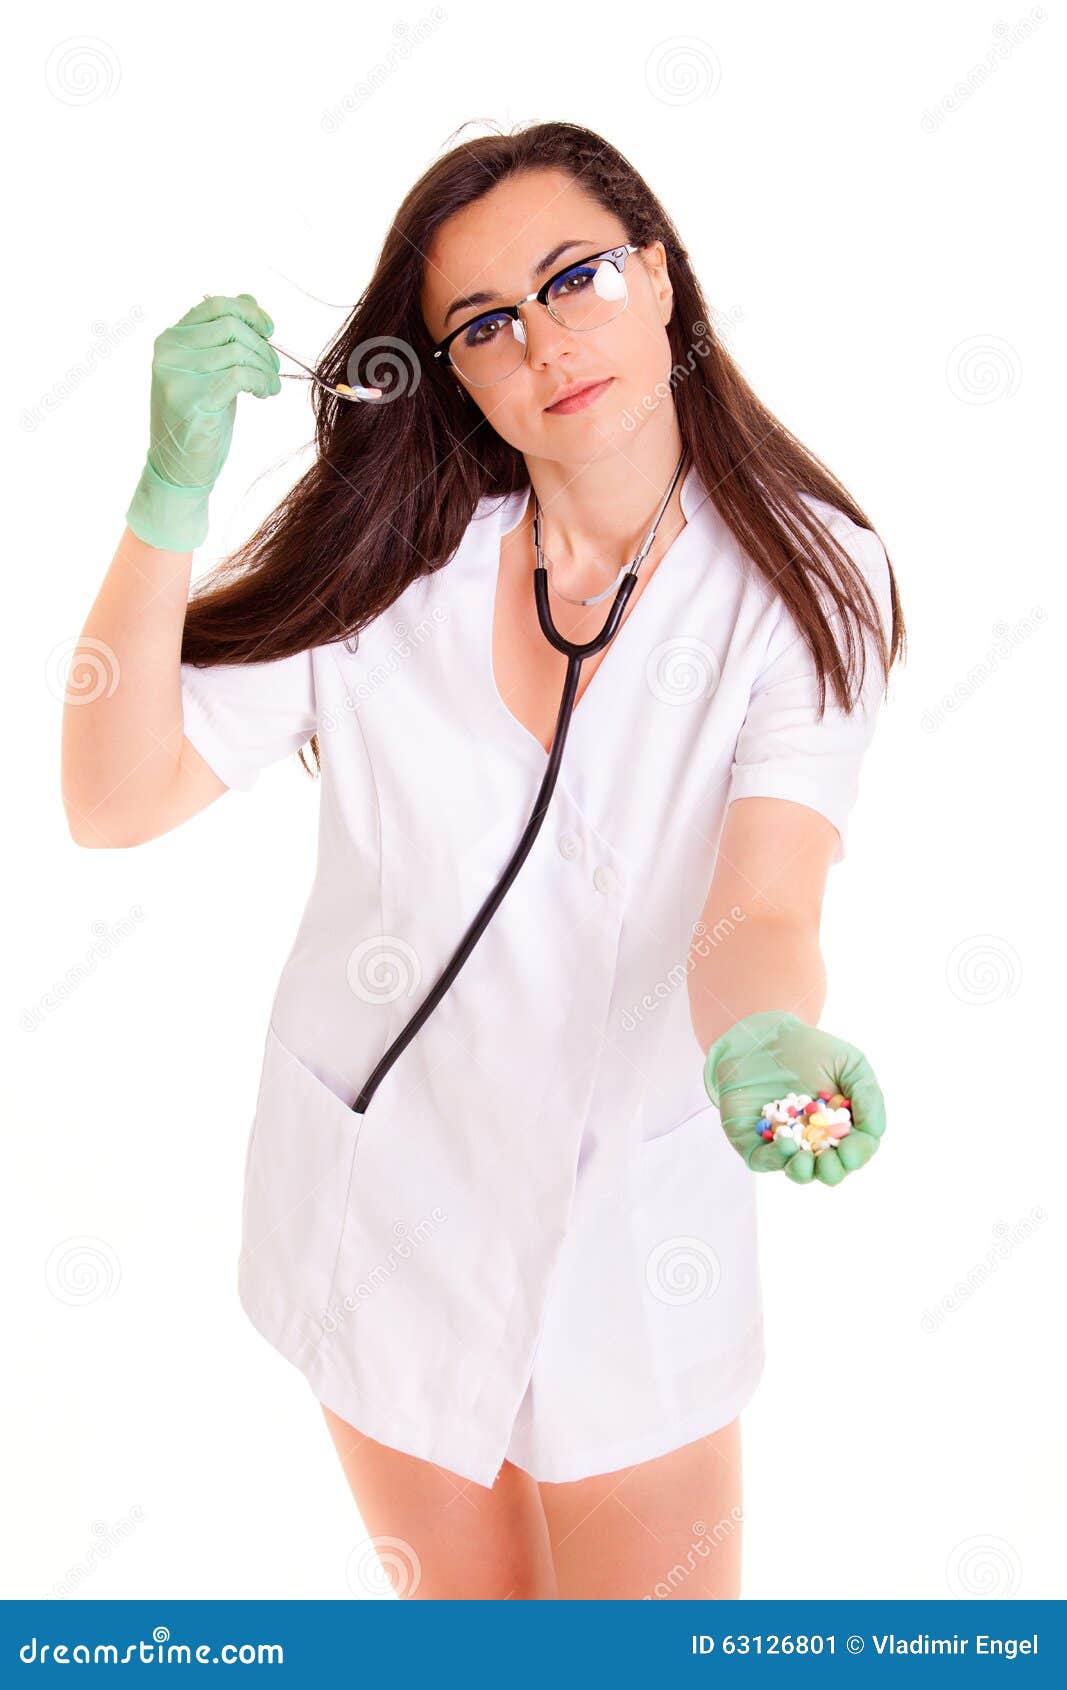 doktor medical healthcare girl  on white background medical staff nurce